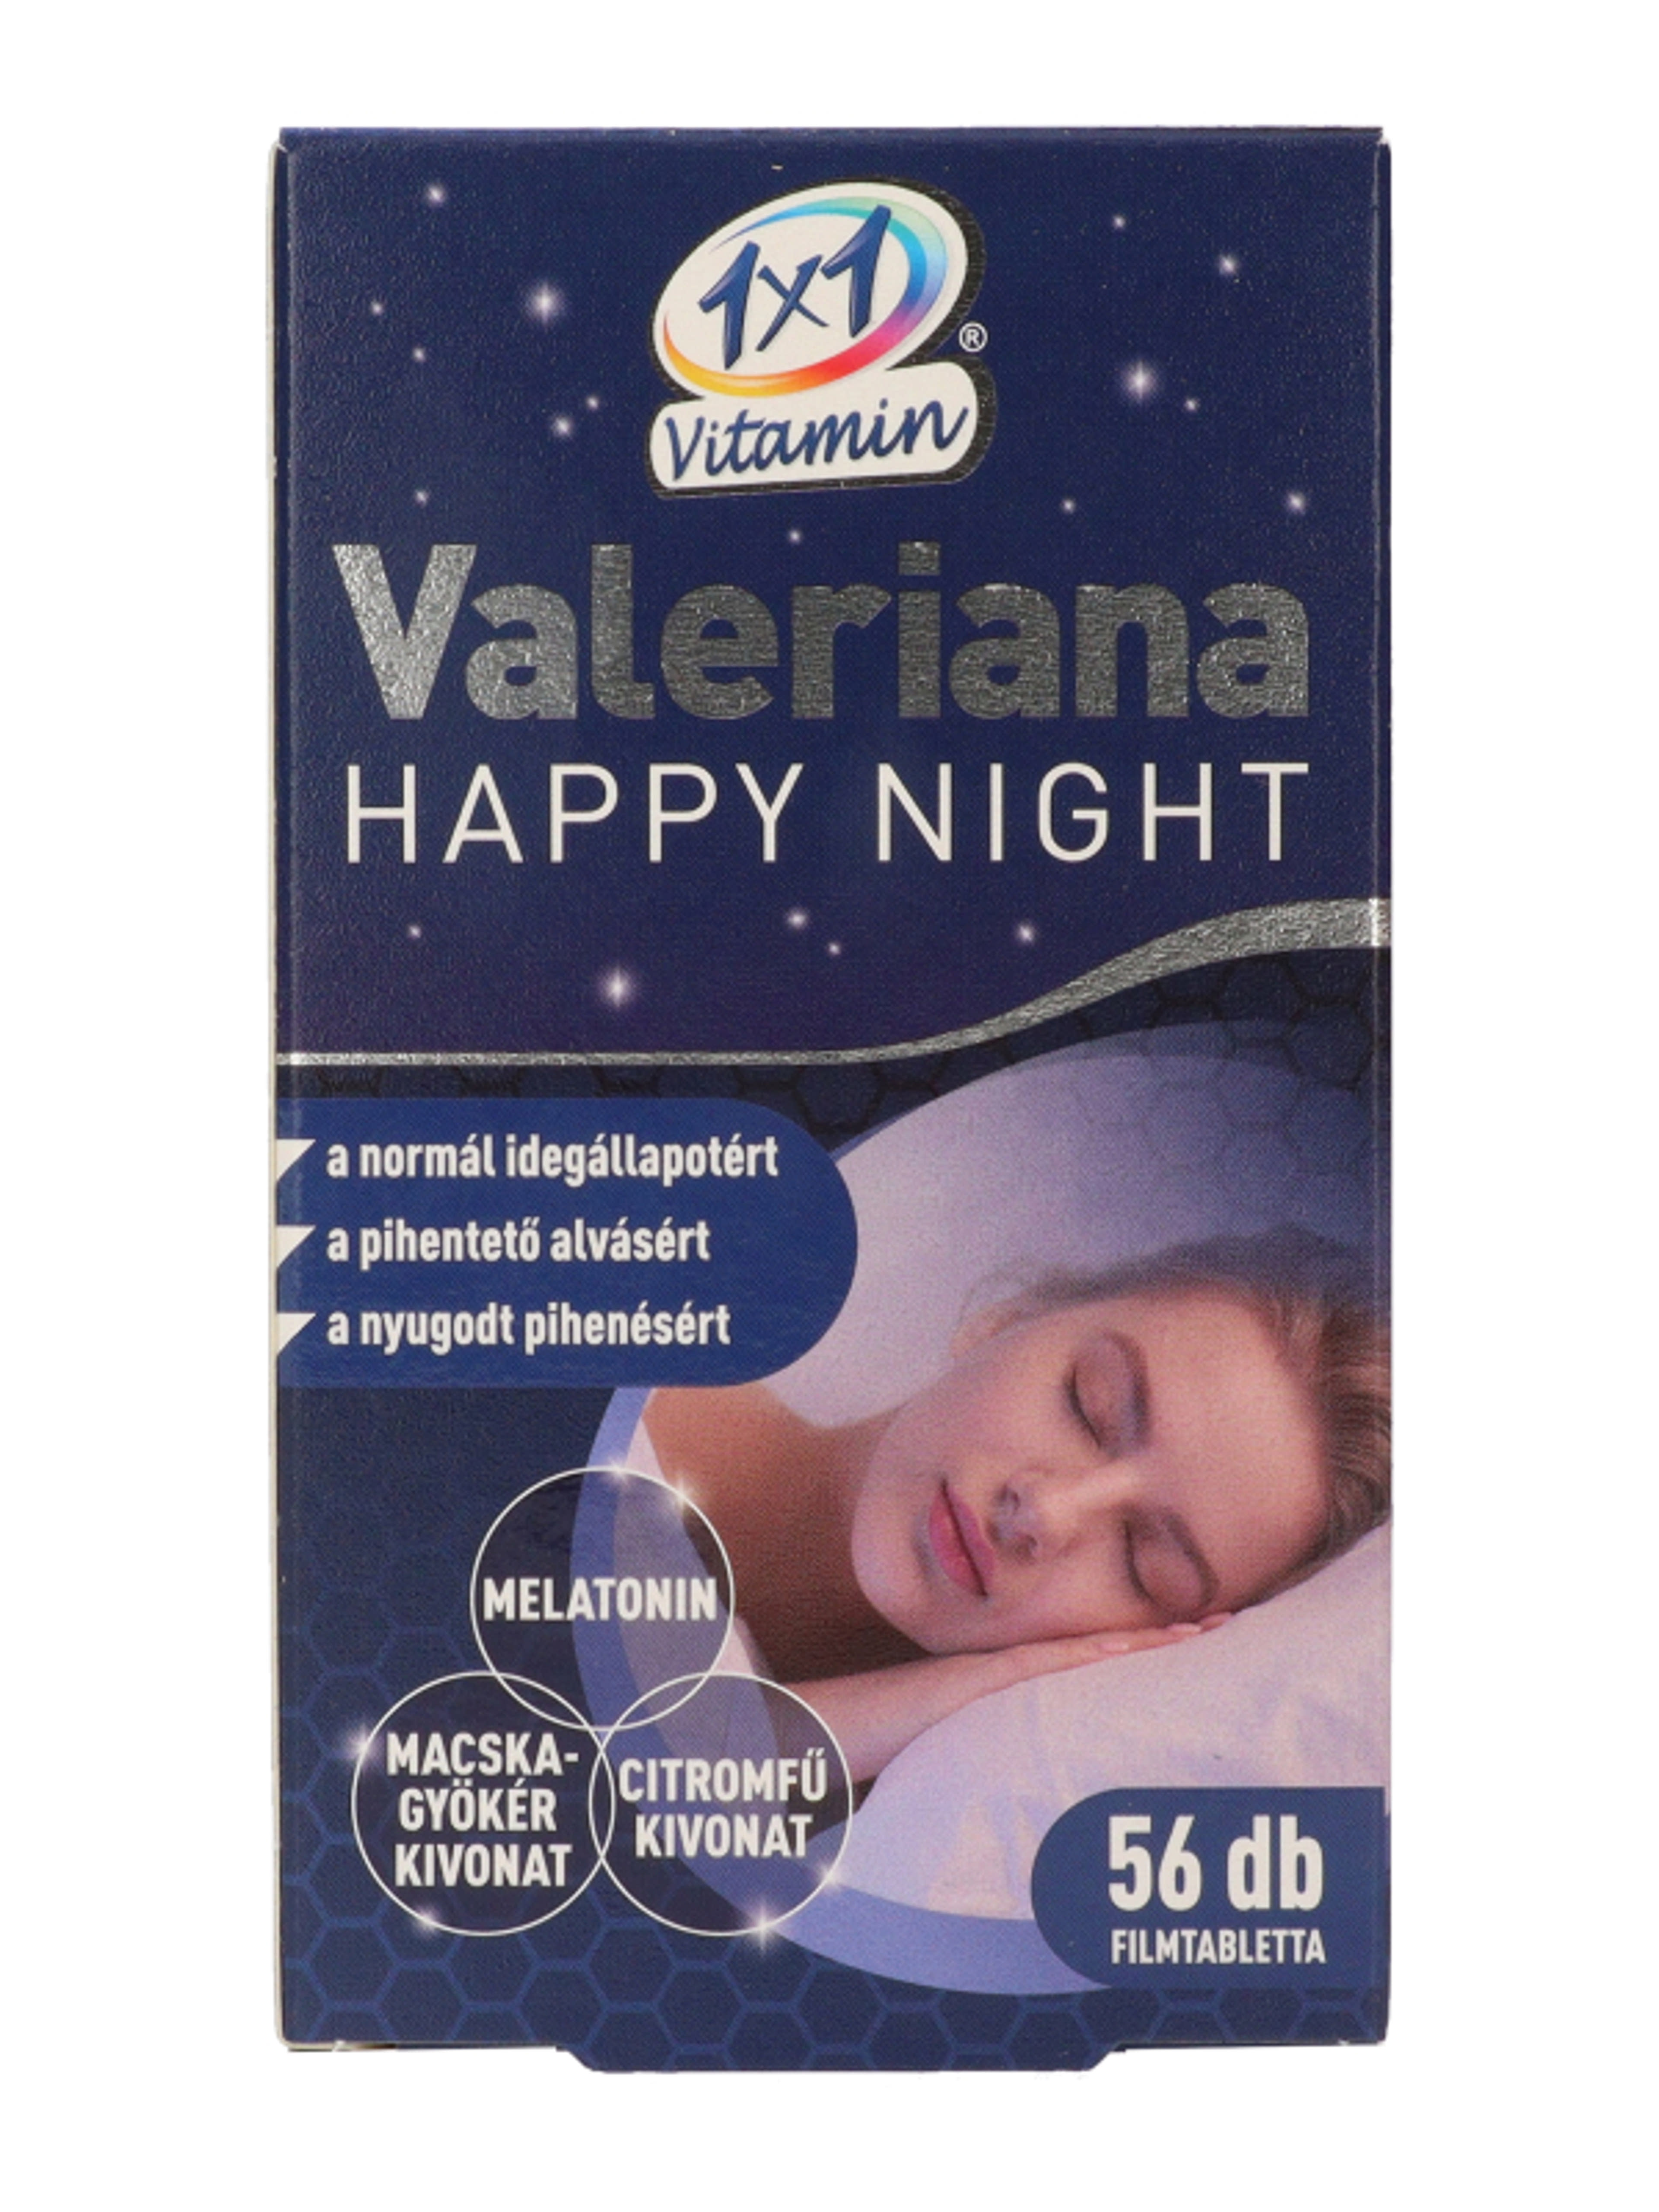 1x1 Vitamin Valeriana Happy Night filmtabletta - 56 db-2